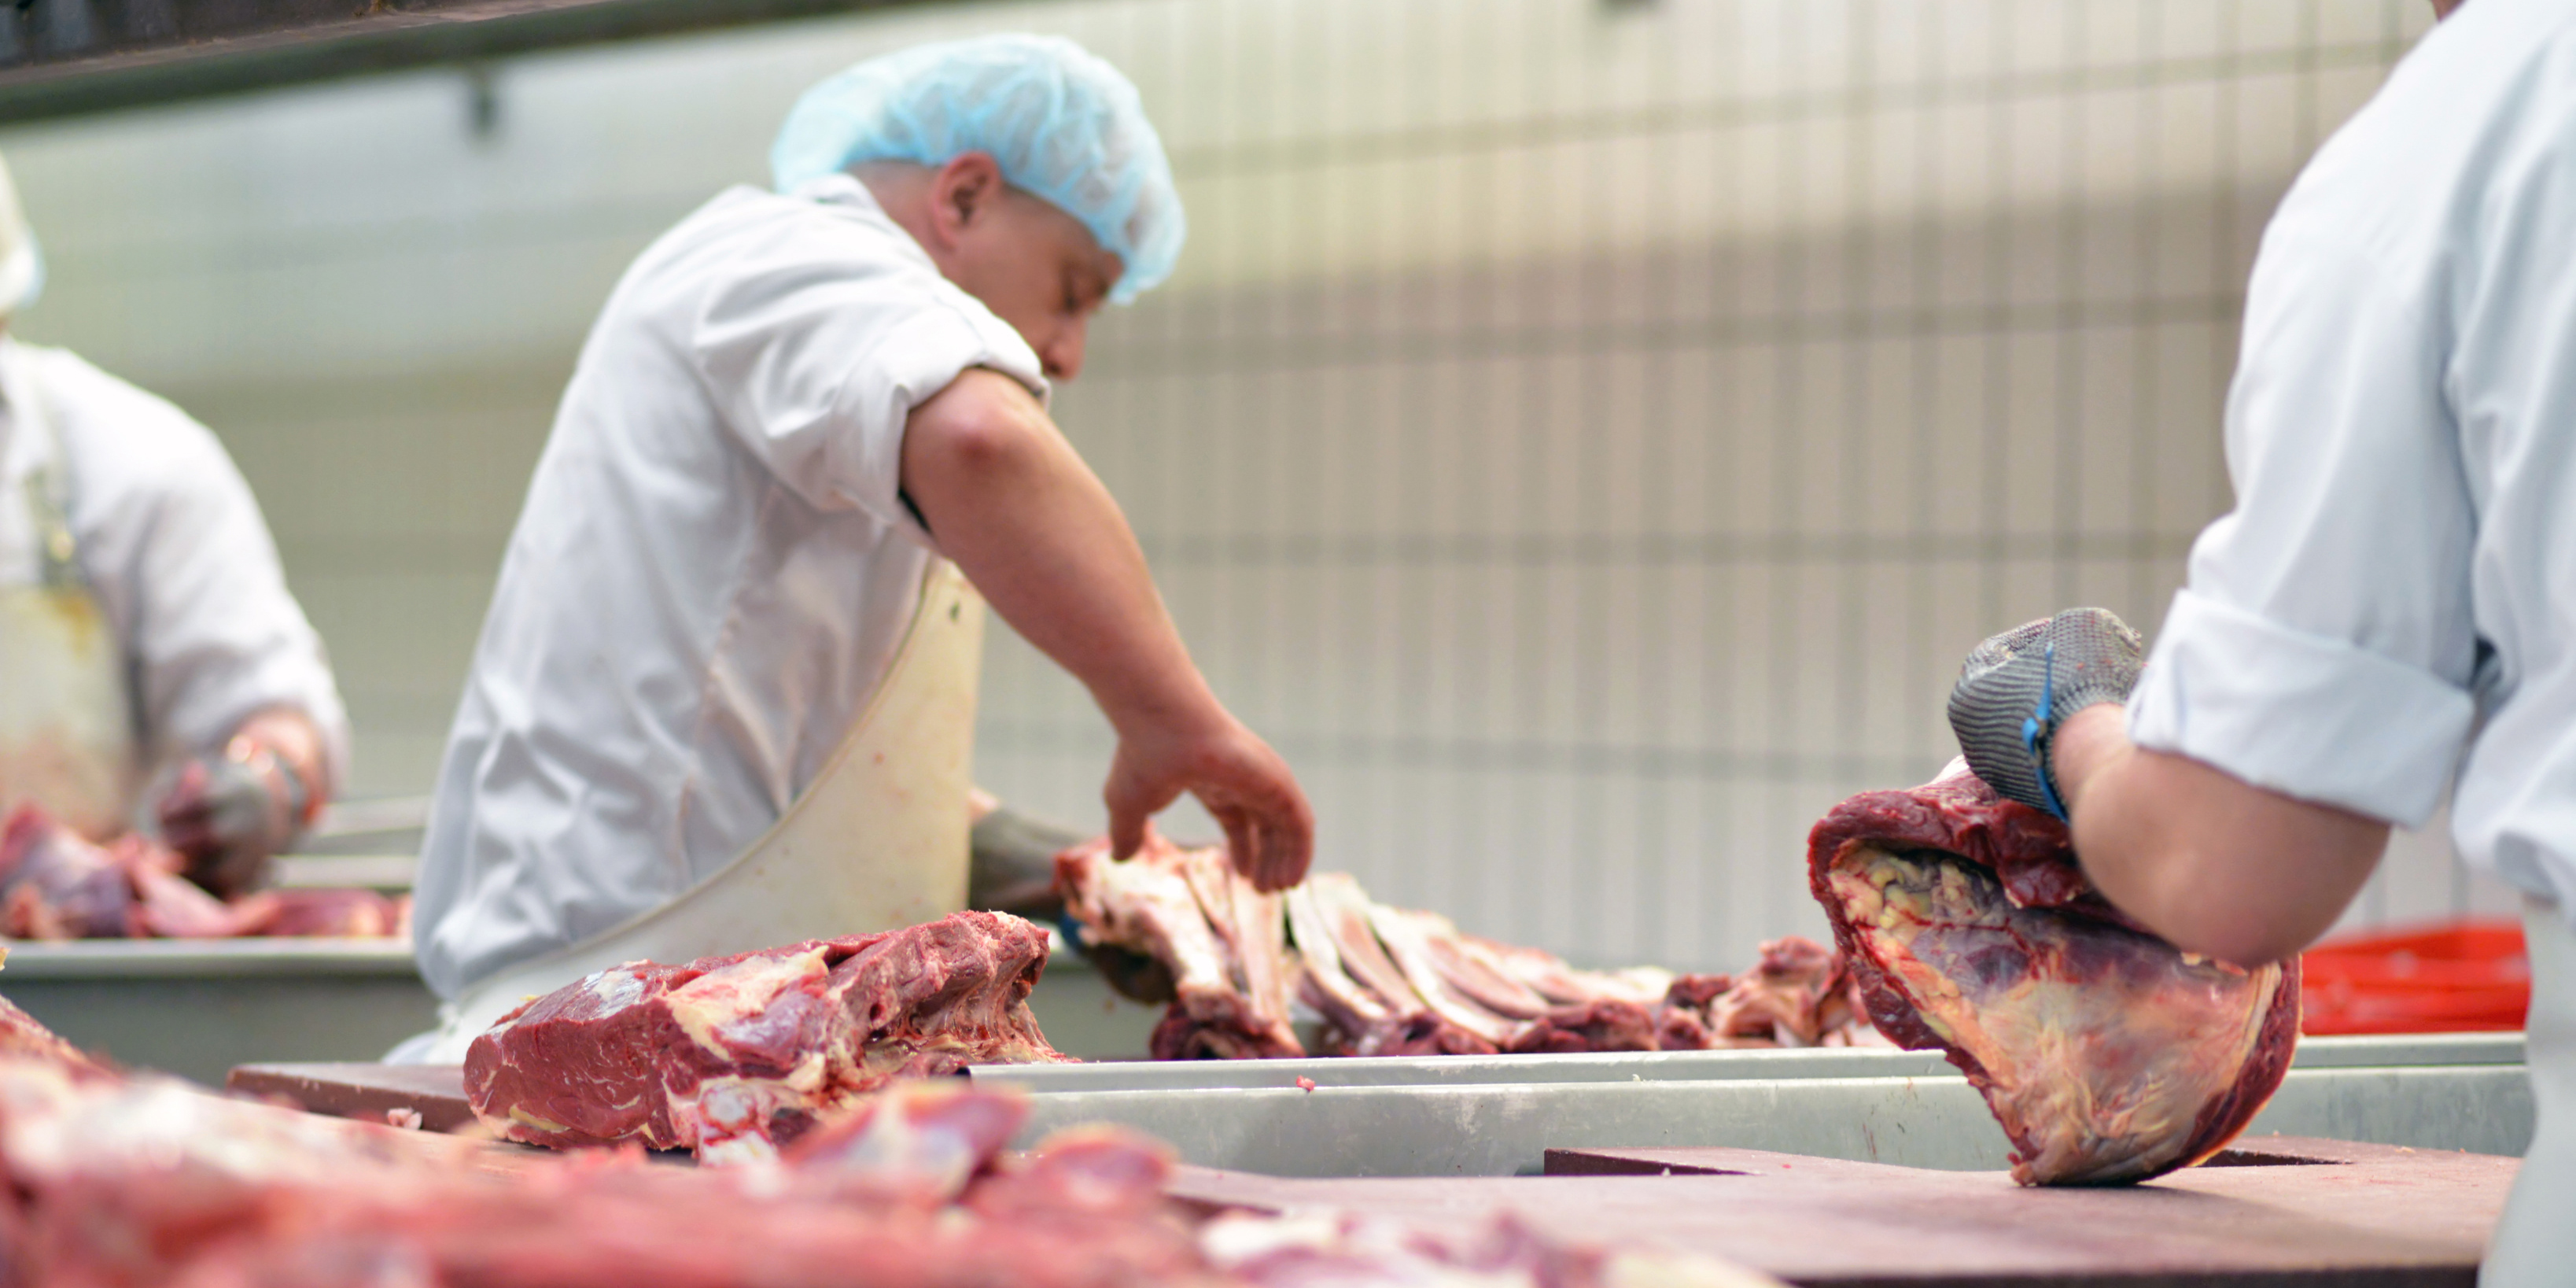 Symbolbild Fleischindustrie: Ein Arbeiter in grünem Kittel und mit Haarnetz zerlegt ein Stück Fleisch.